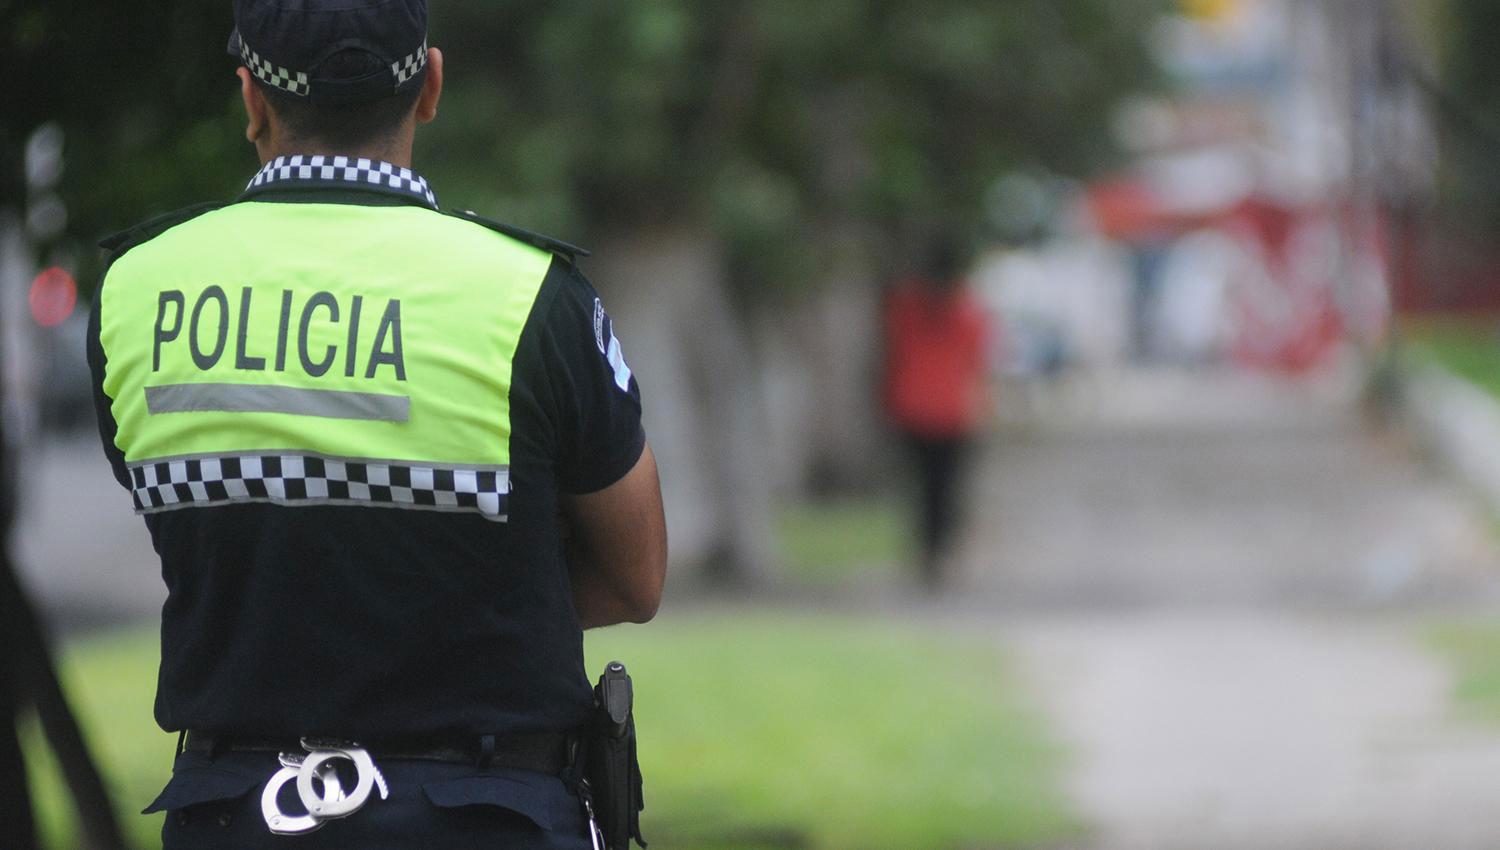 POLICÍA DE TUCUMÁN. LA GACETA/ ARCHIVO